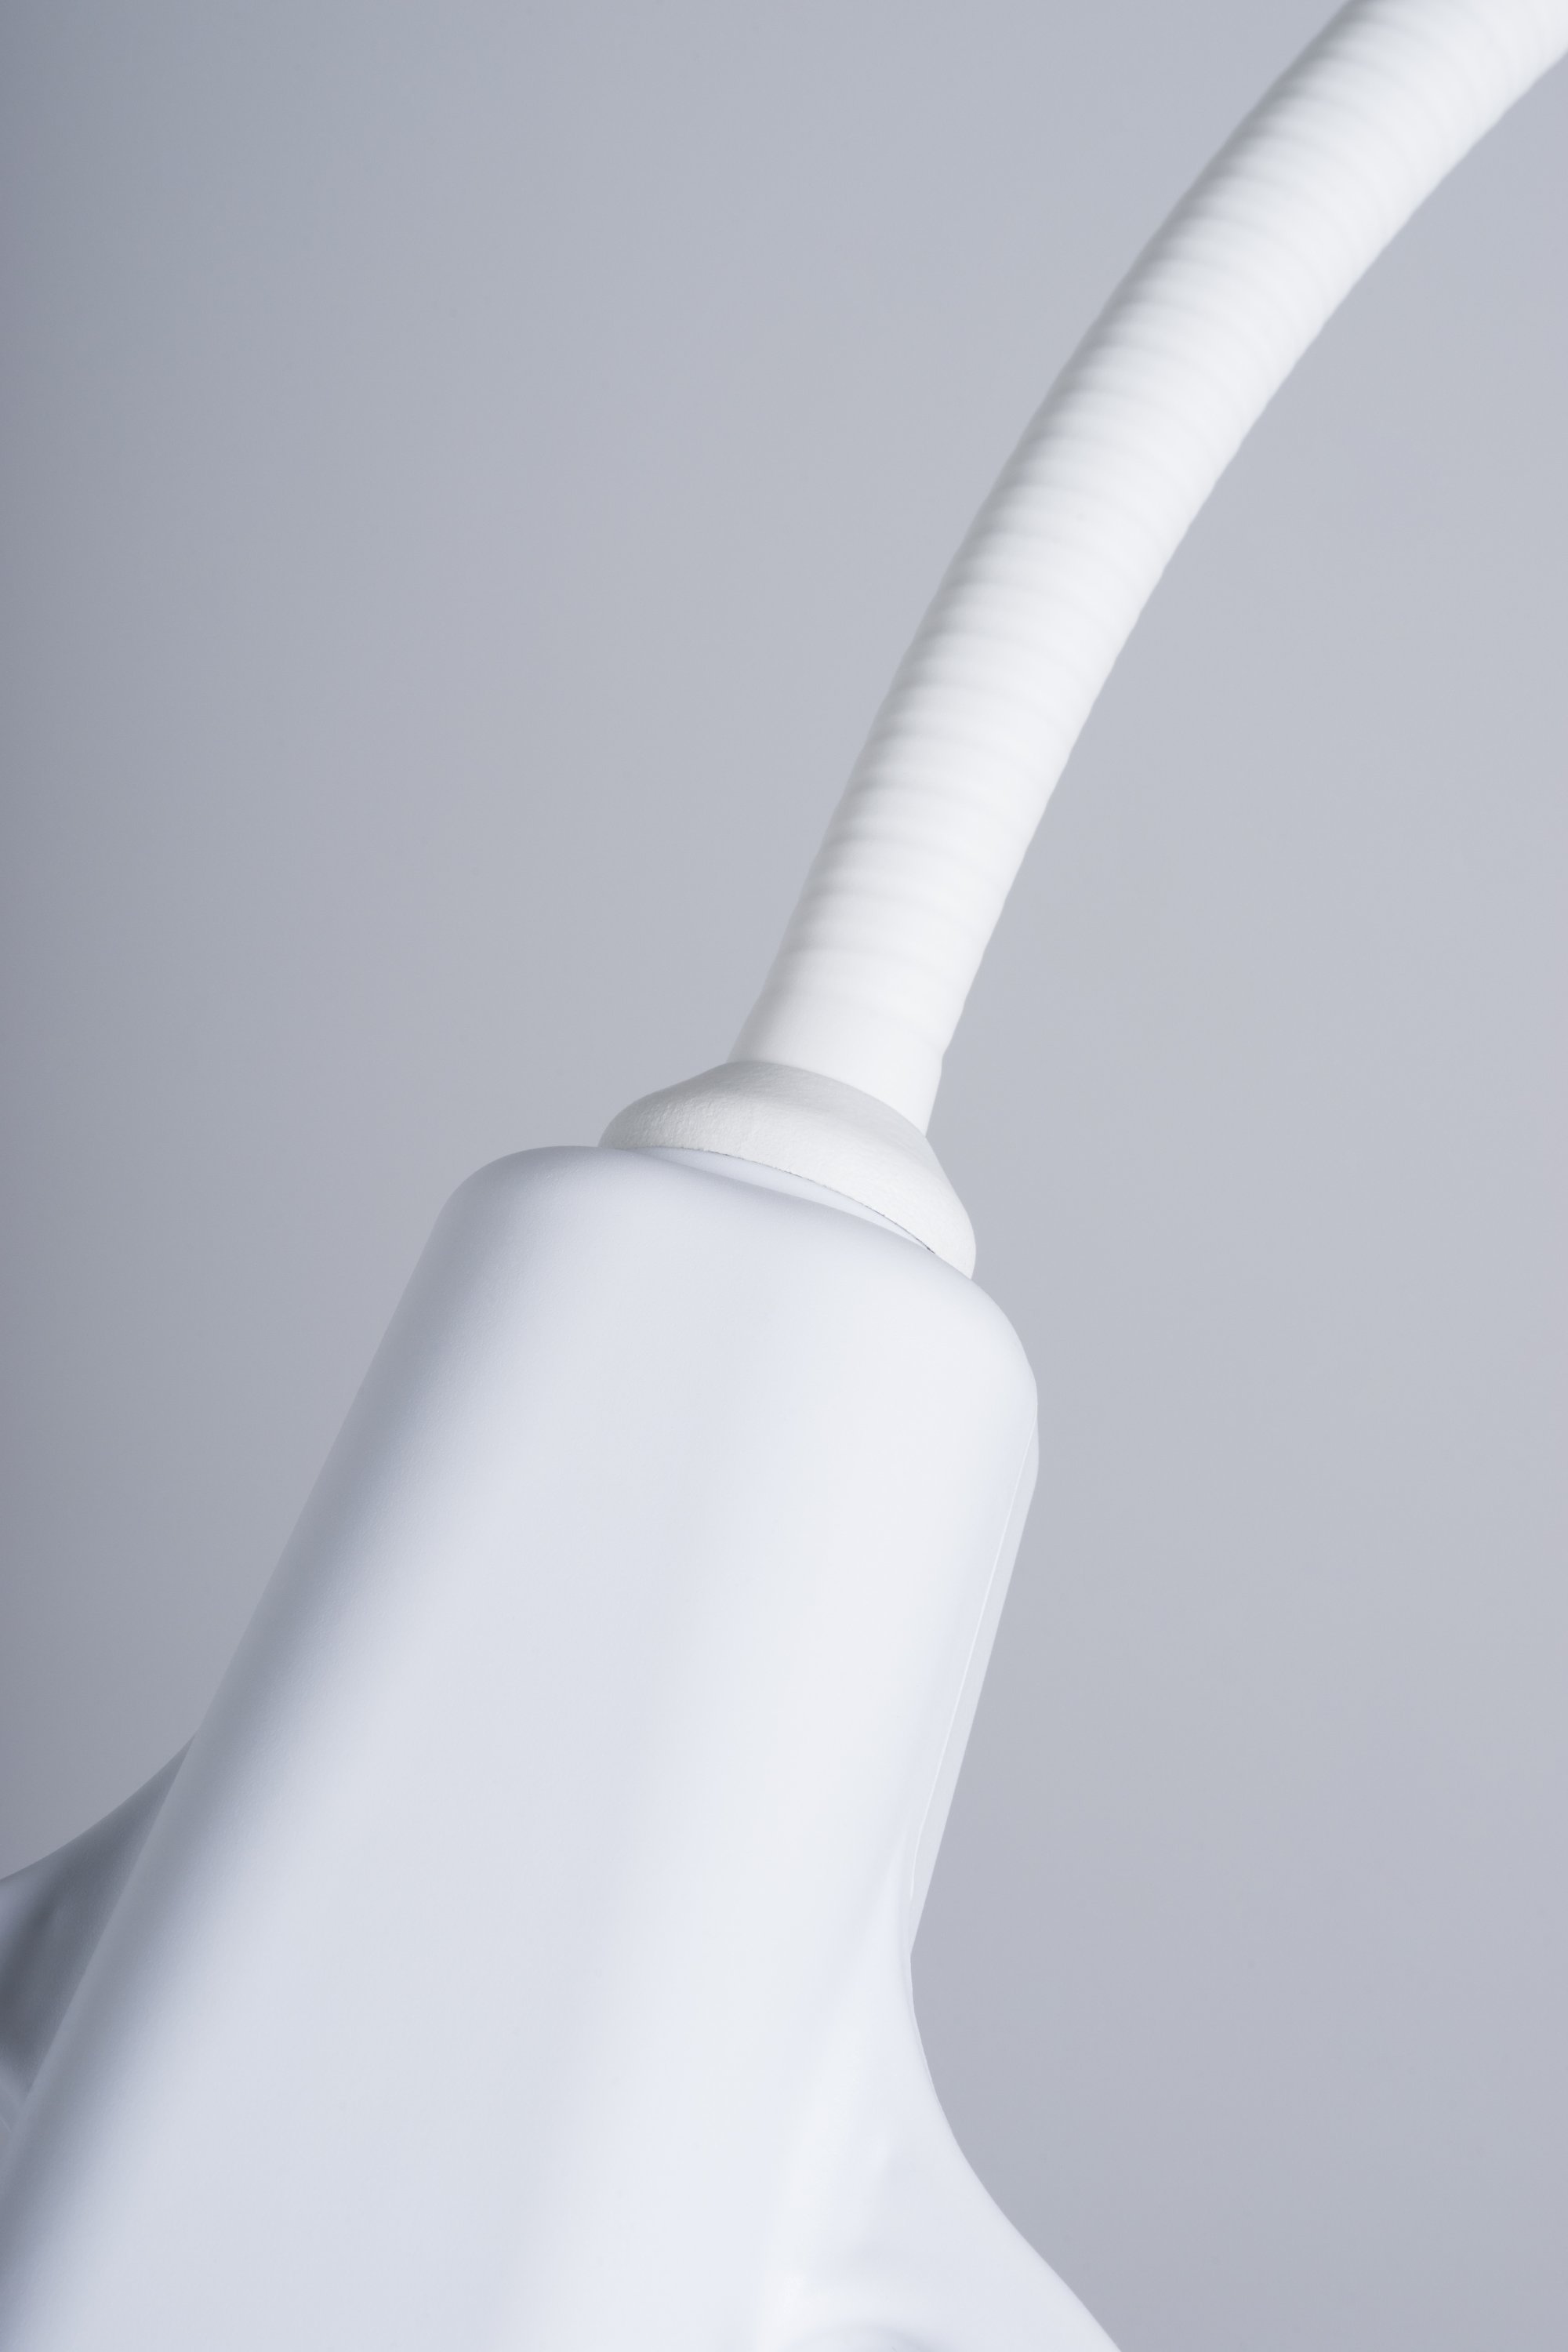 Lámpara de reconocimiento MS FLEX PLUS con brazo flexible y regulador de intensidad. Anclaje a pared